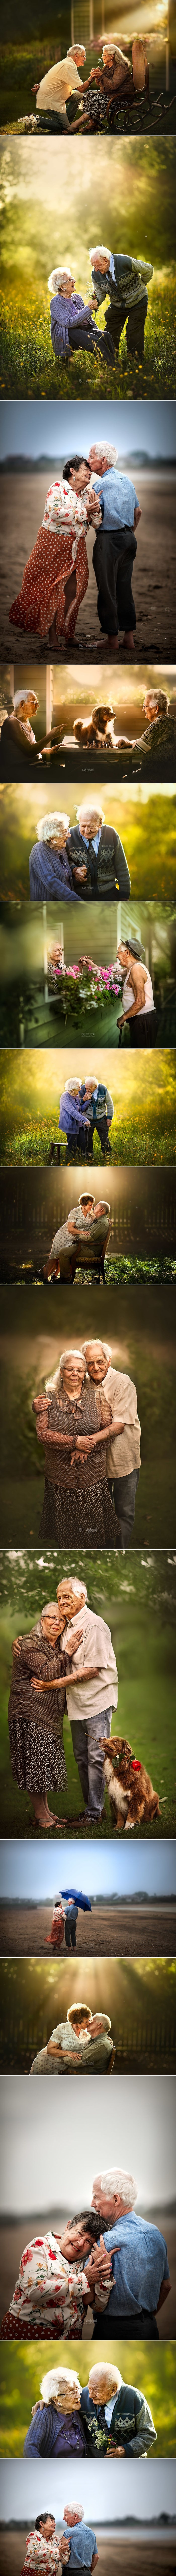 Fotografkinja slika romantične stare parove i dokazuje da je prava ljubav vječna